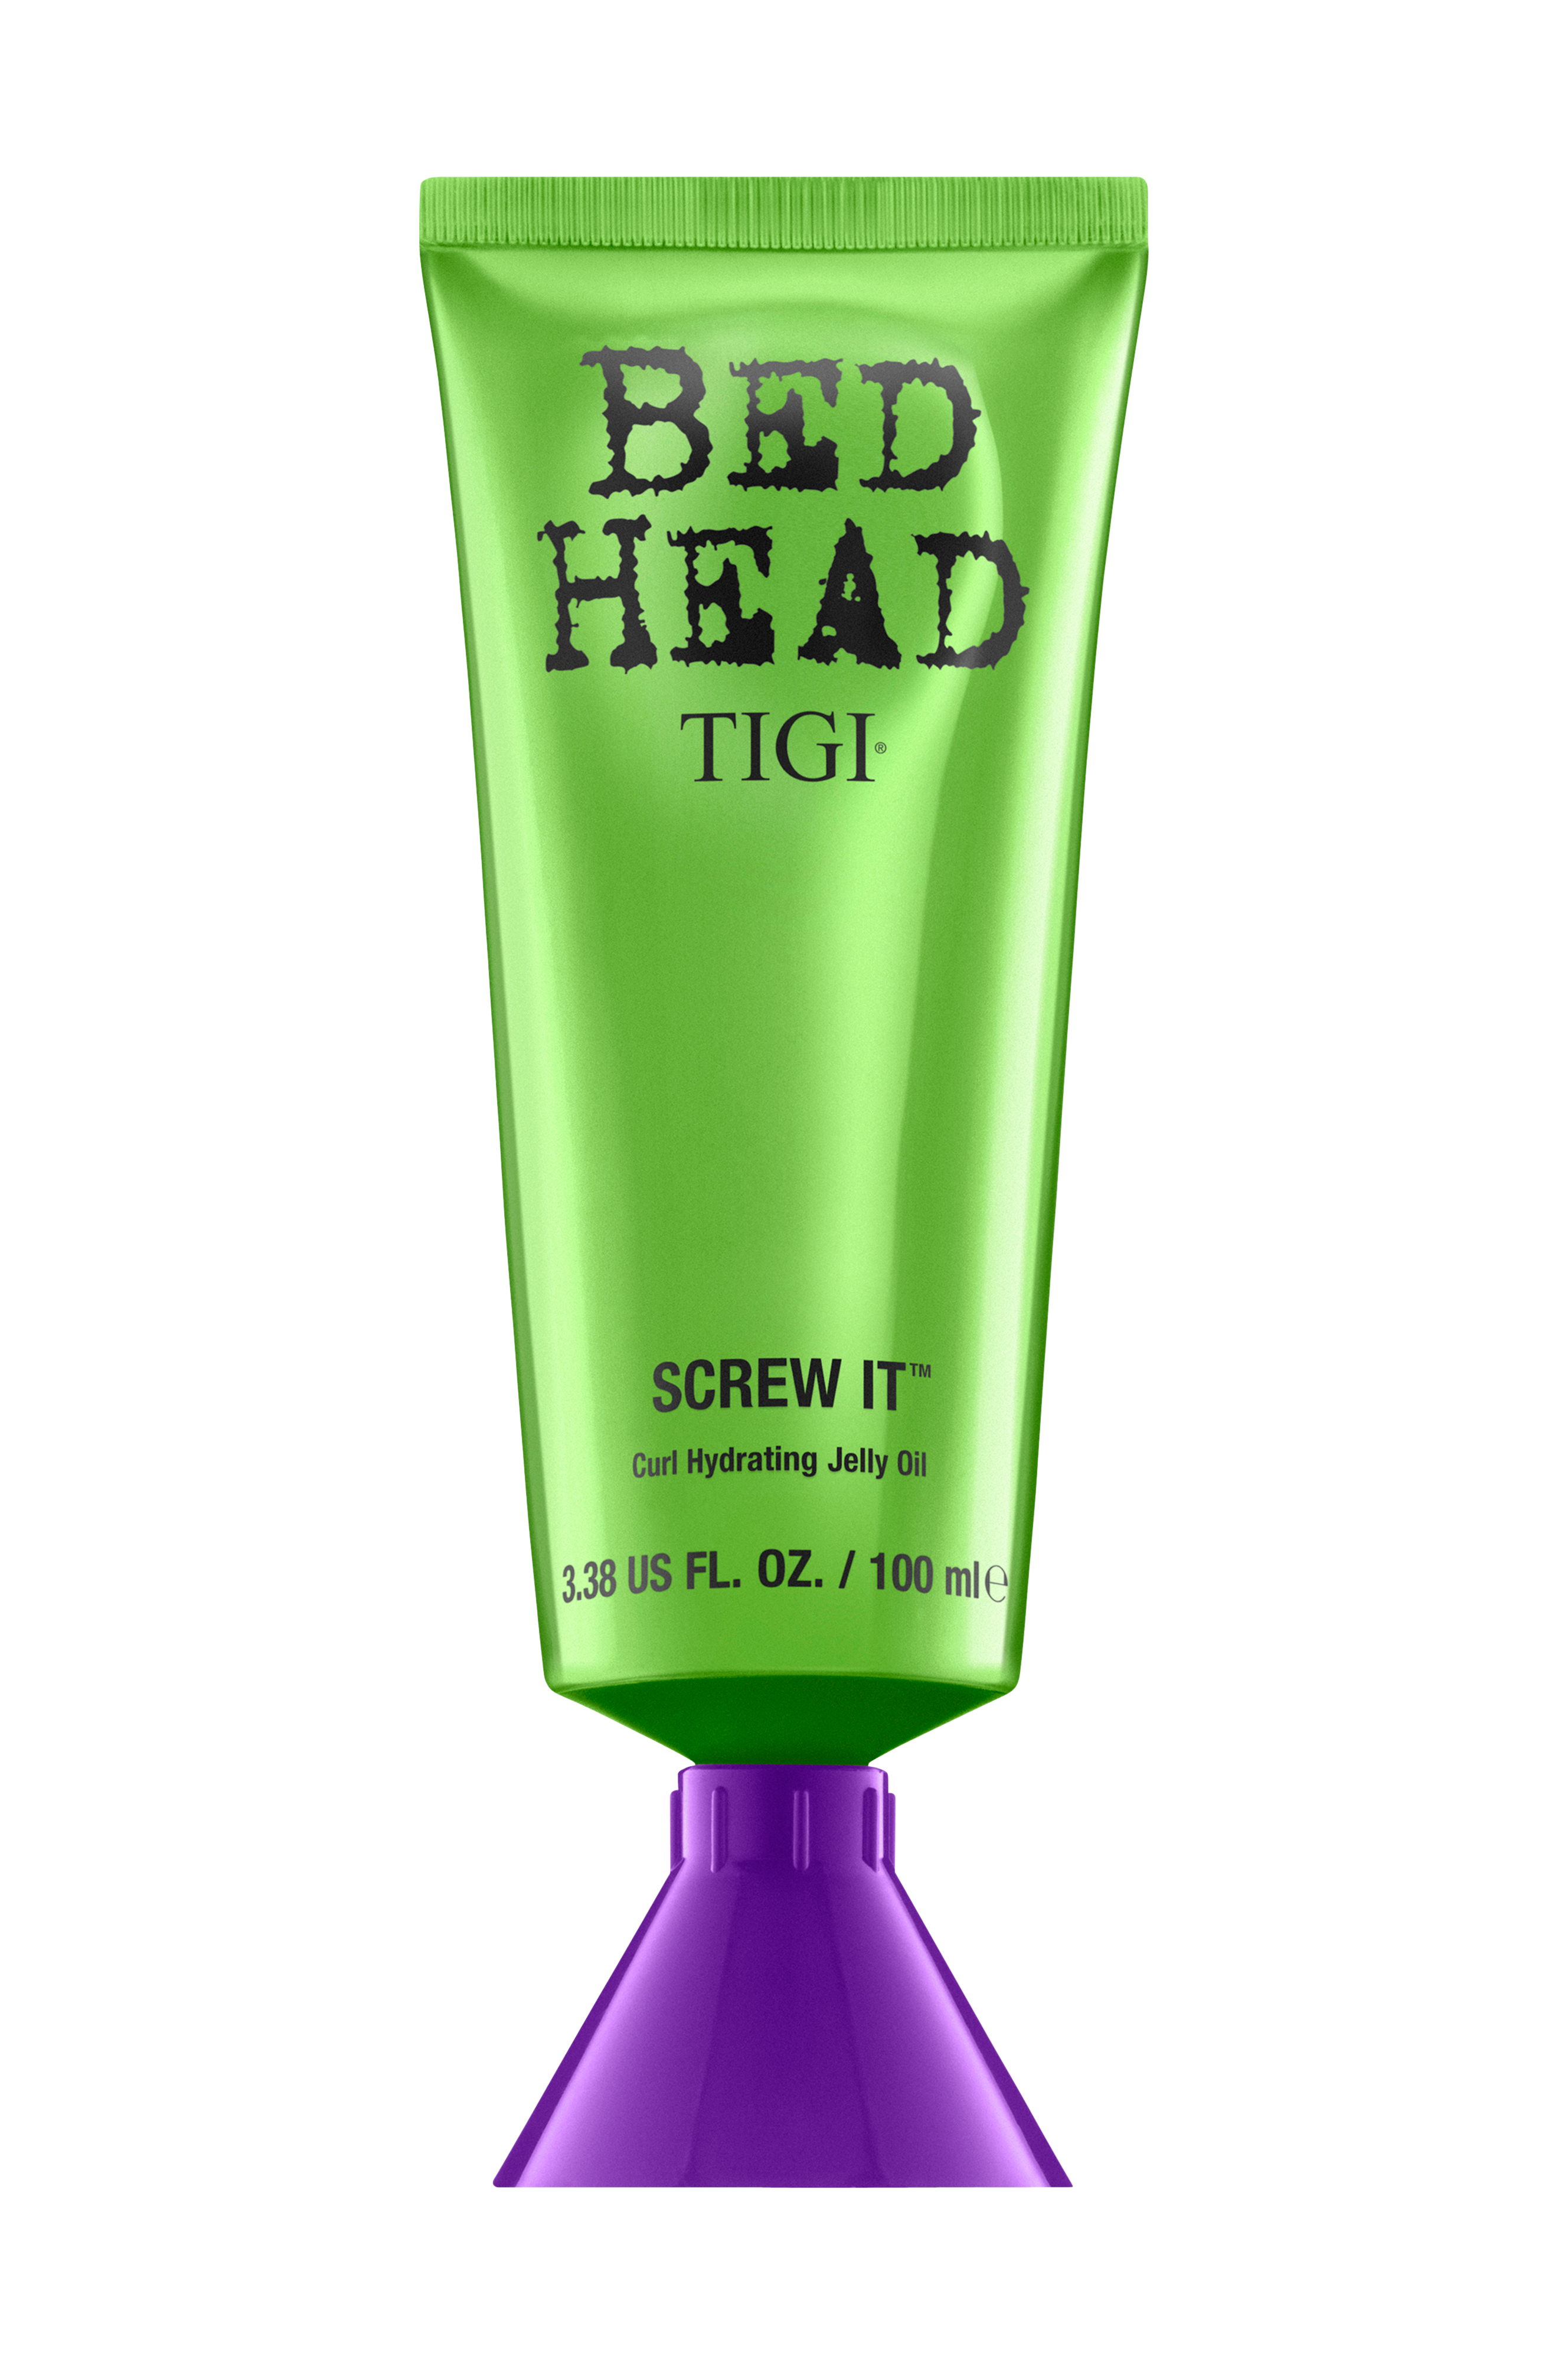 Масло желе. Tigi Bed head Screw it. Bed head Hydrating Jelly Oil Tigi. Bed head Tigi для волос. Масло-желе увлажняющее Tigi Bed head wanna Glow для волос, 100 мл.